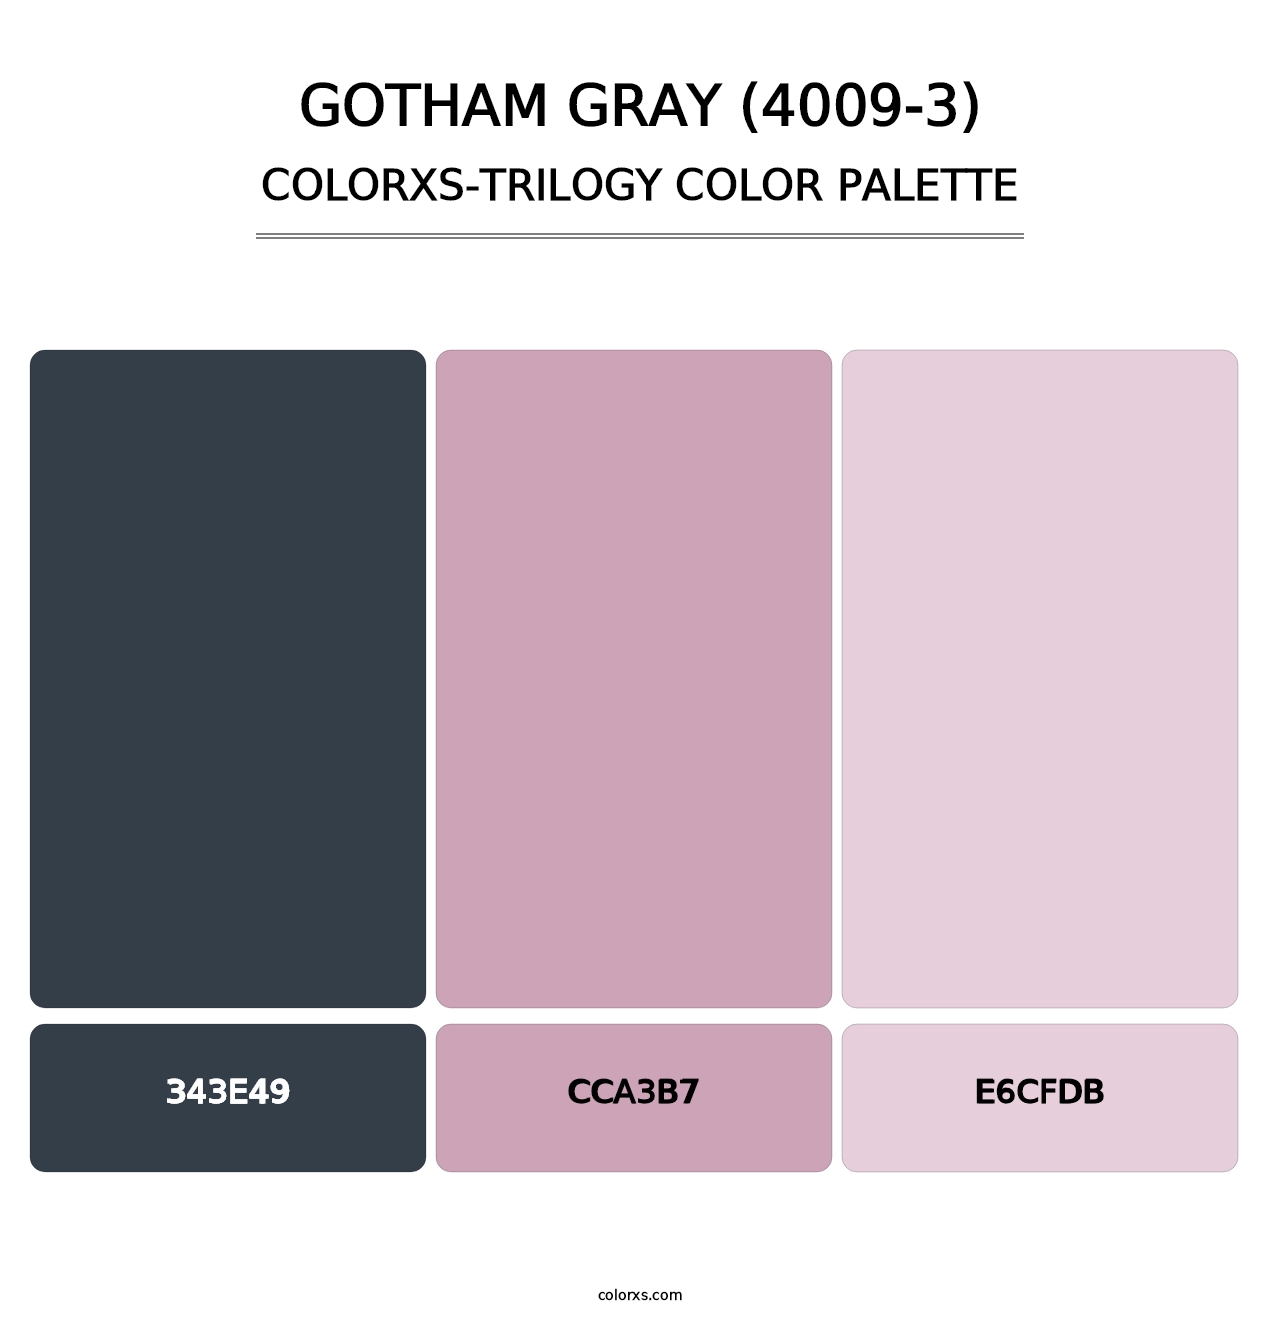 Gotham Gray (4009-3) - Colorxs Trilogy Palette